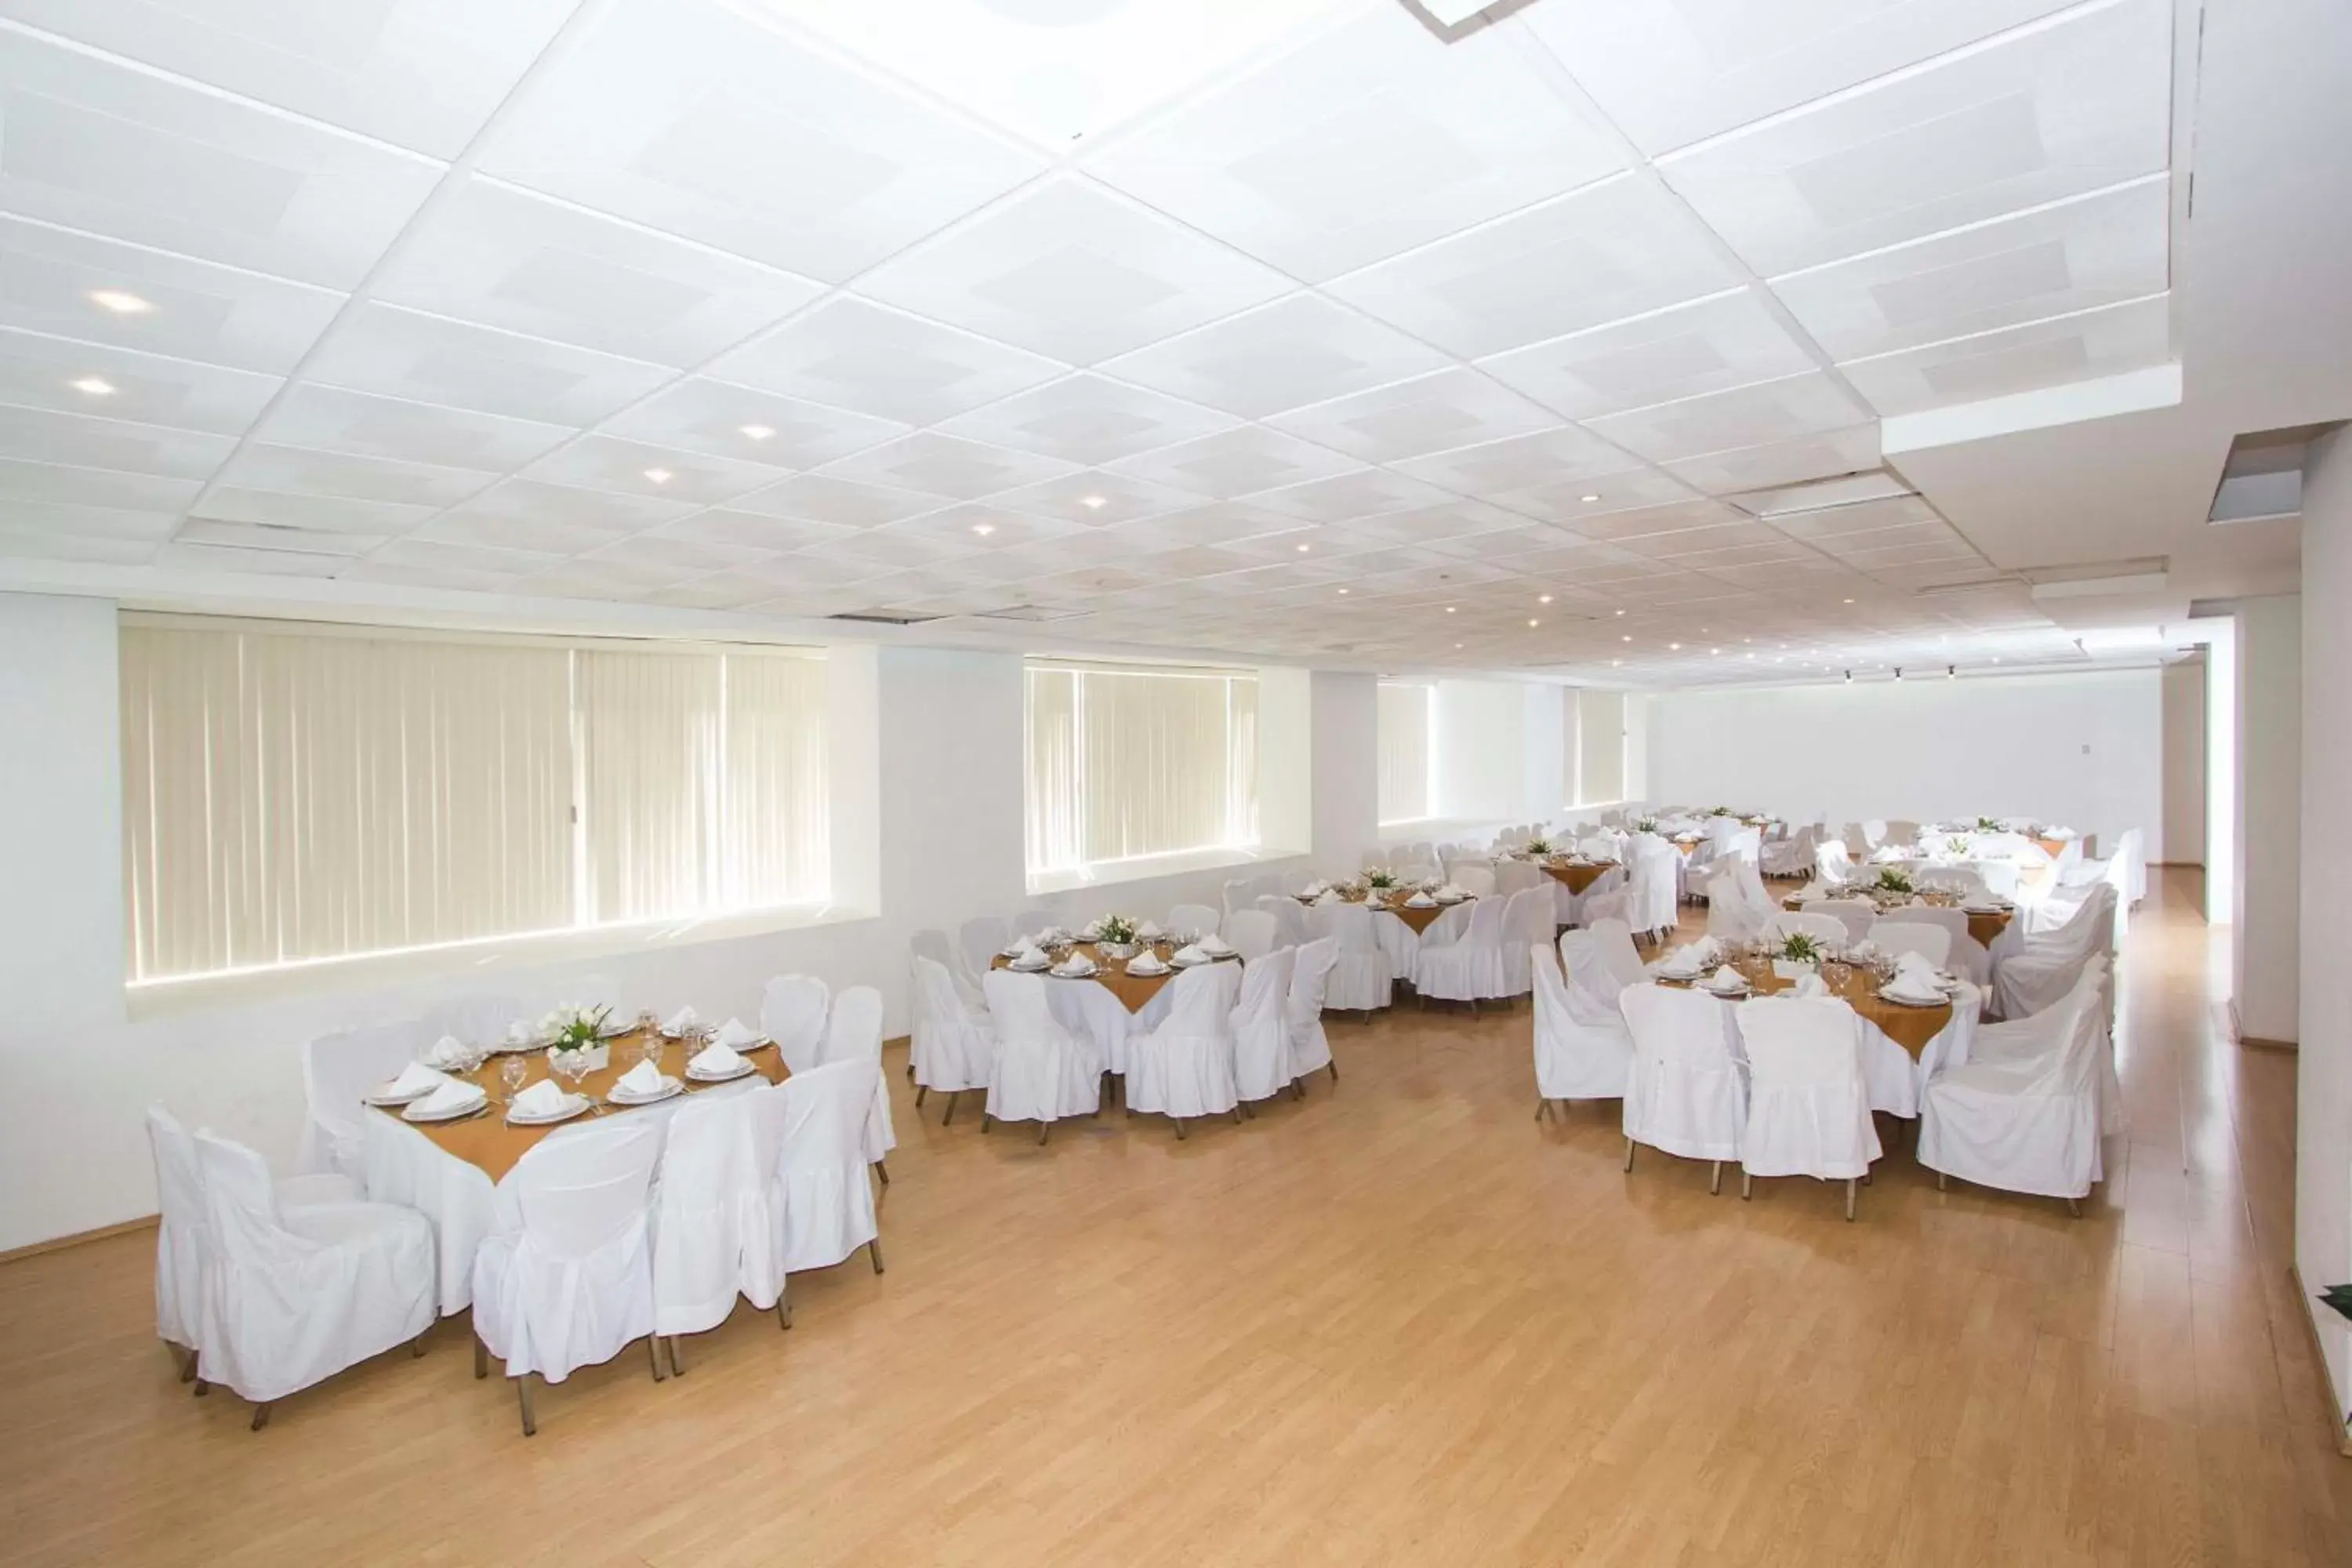 Banquet/Function facilities, Banquet Facilities in Hotel Valle de Mexico Toreo